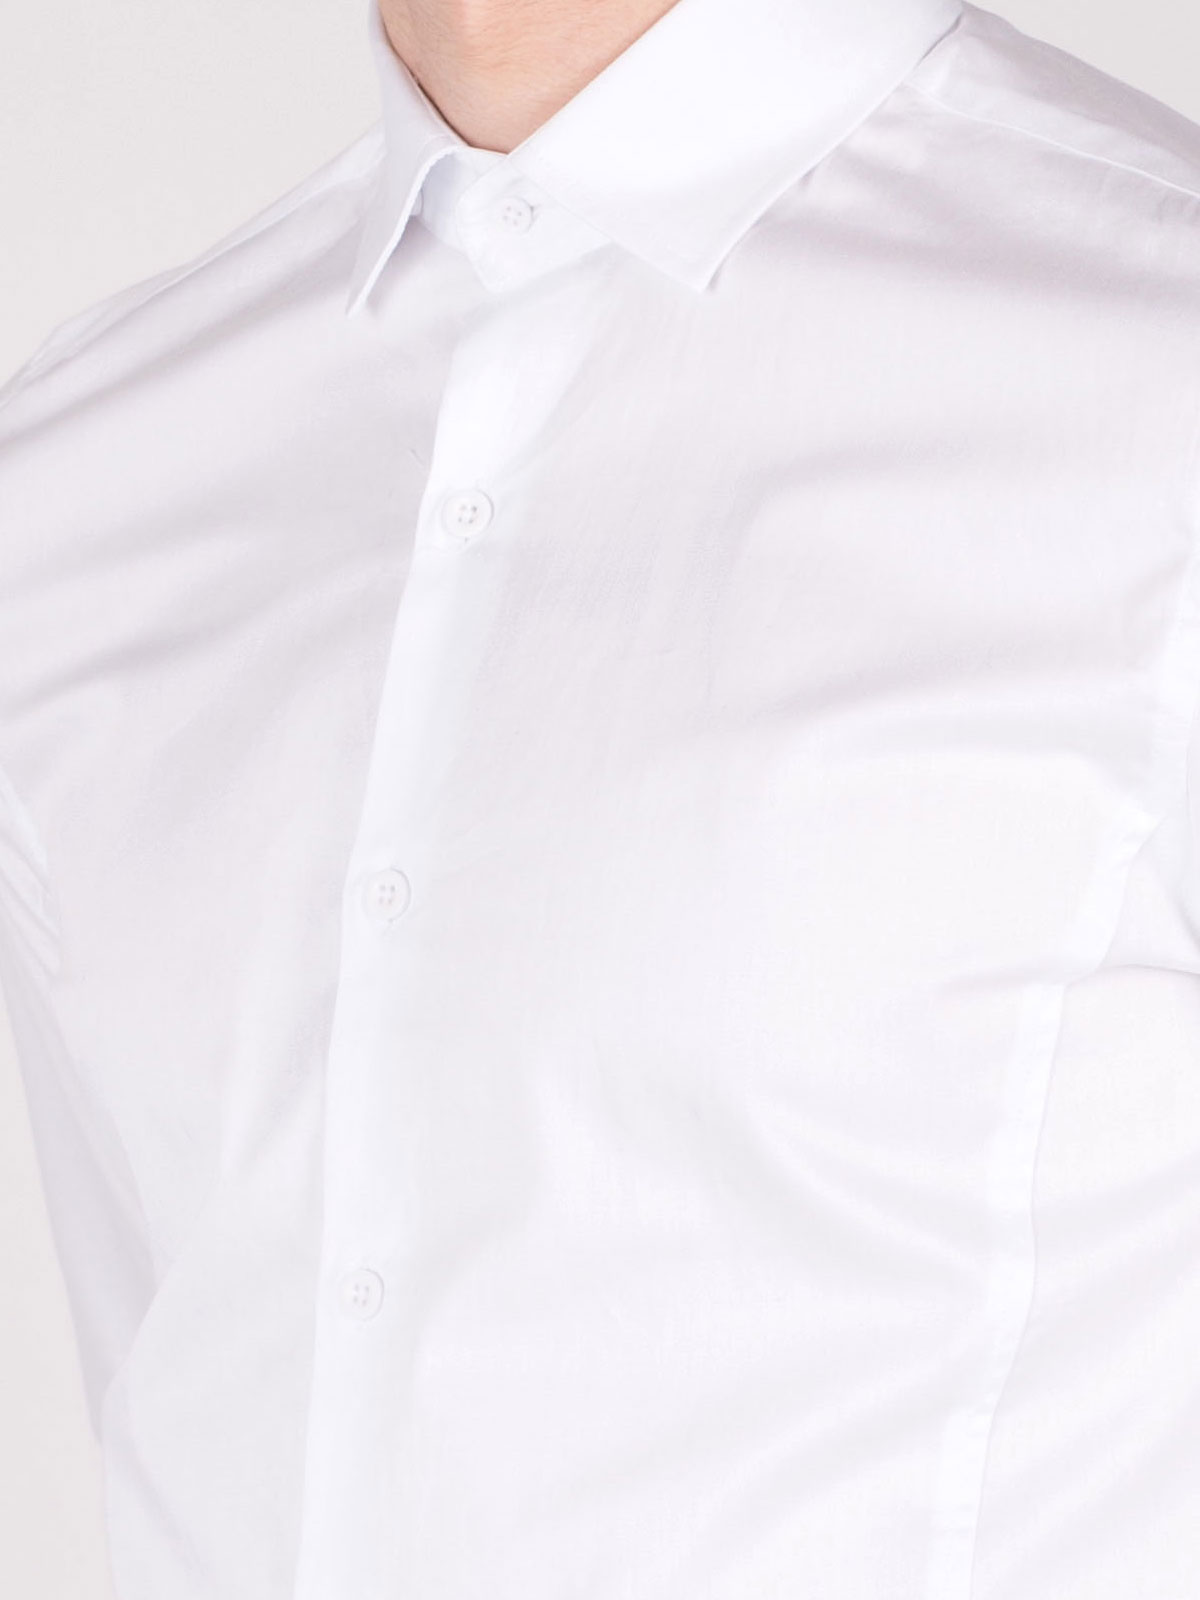 Бяла класическа риза - 21358 55.00 лв img3